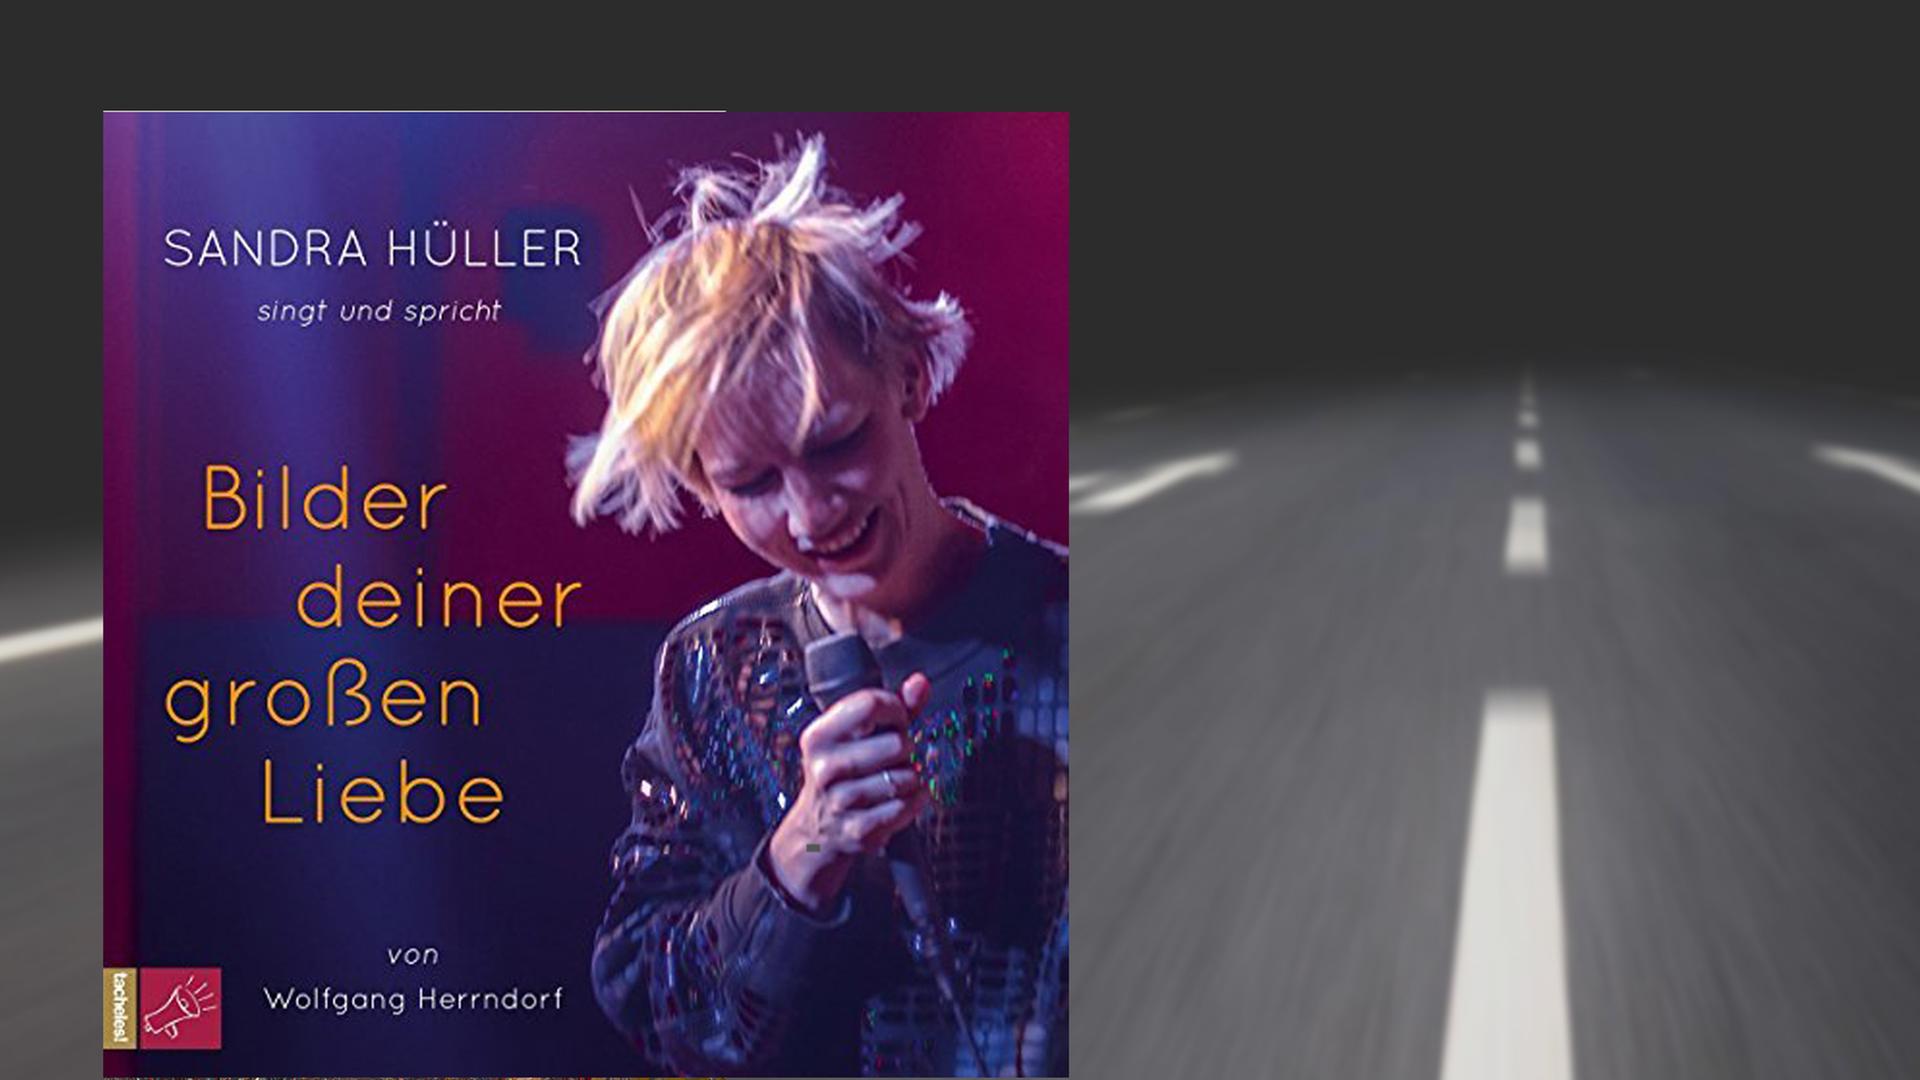 Hörbuchcover "Bilder deiner großen Liebe" von Wolfgang Herrndorf, gesprochen und gesungen von Sandra Hüller